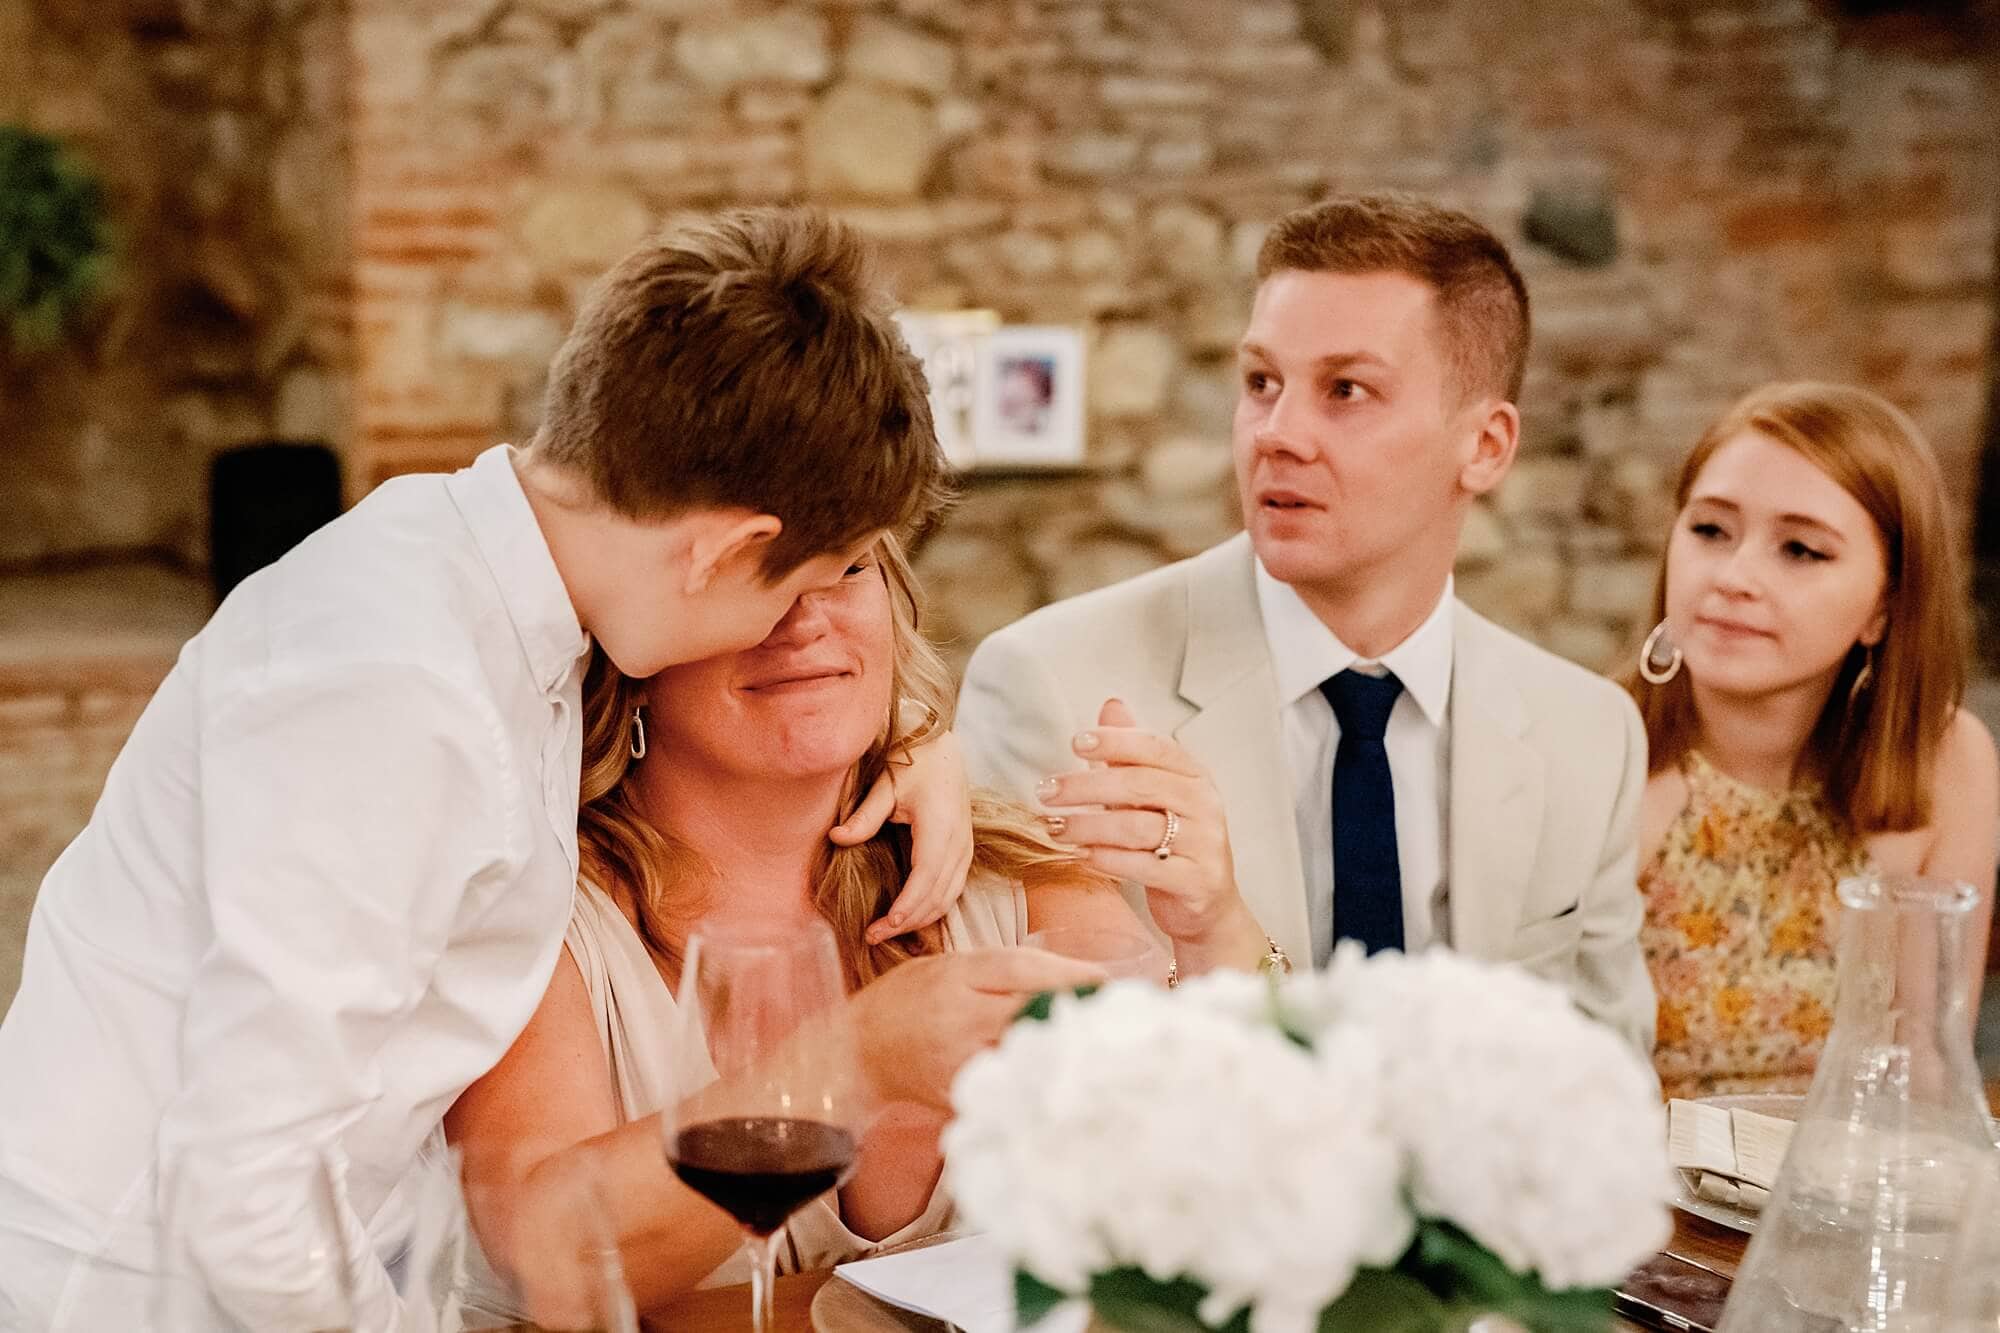 son comforting crying mum at Tuscany wedding